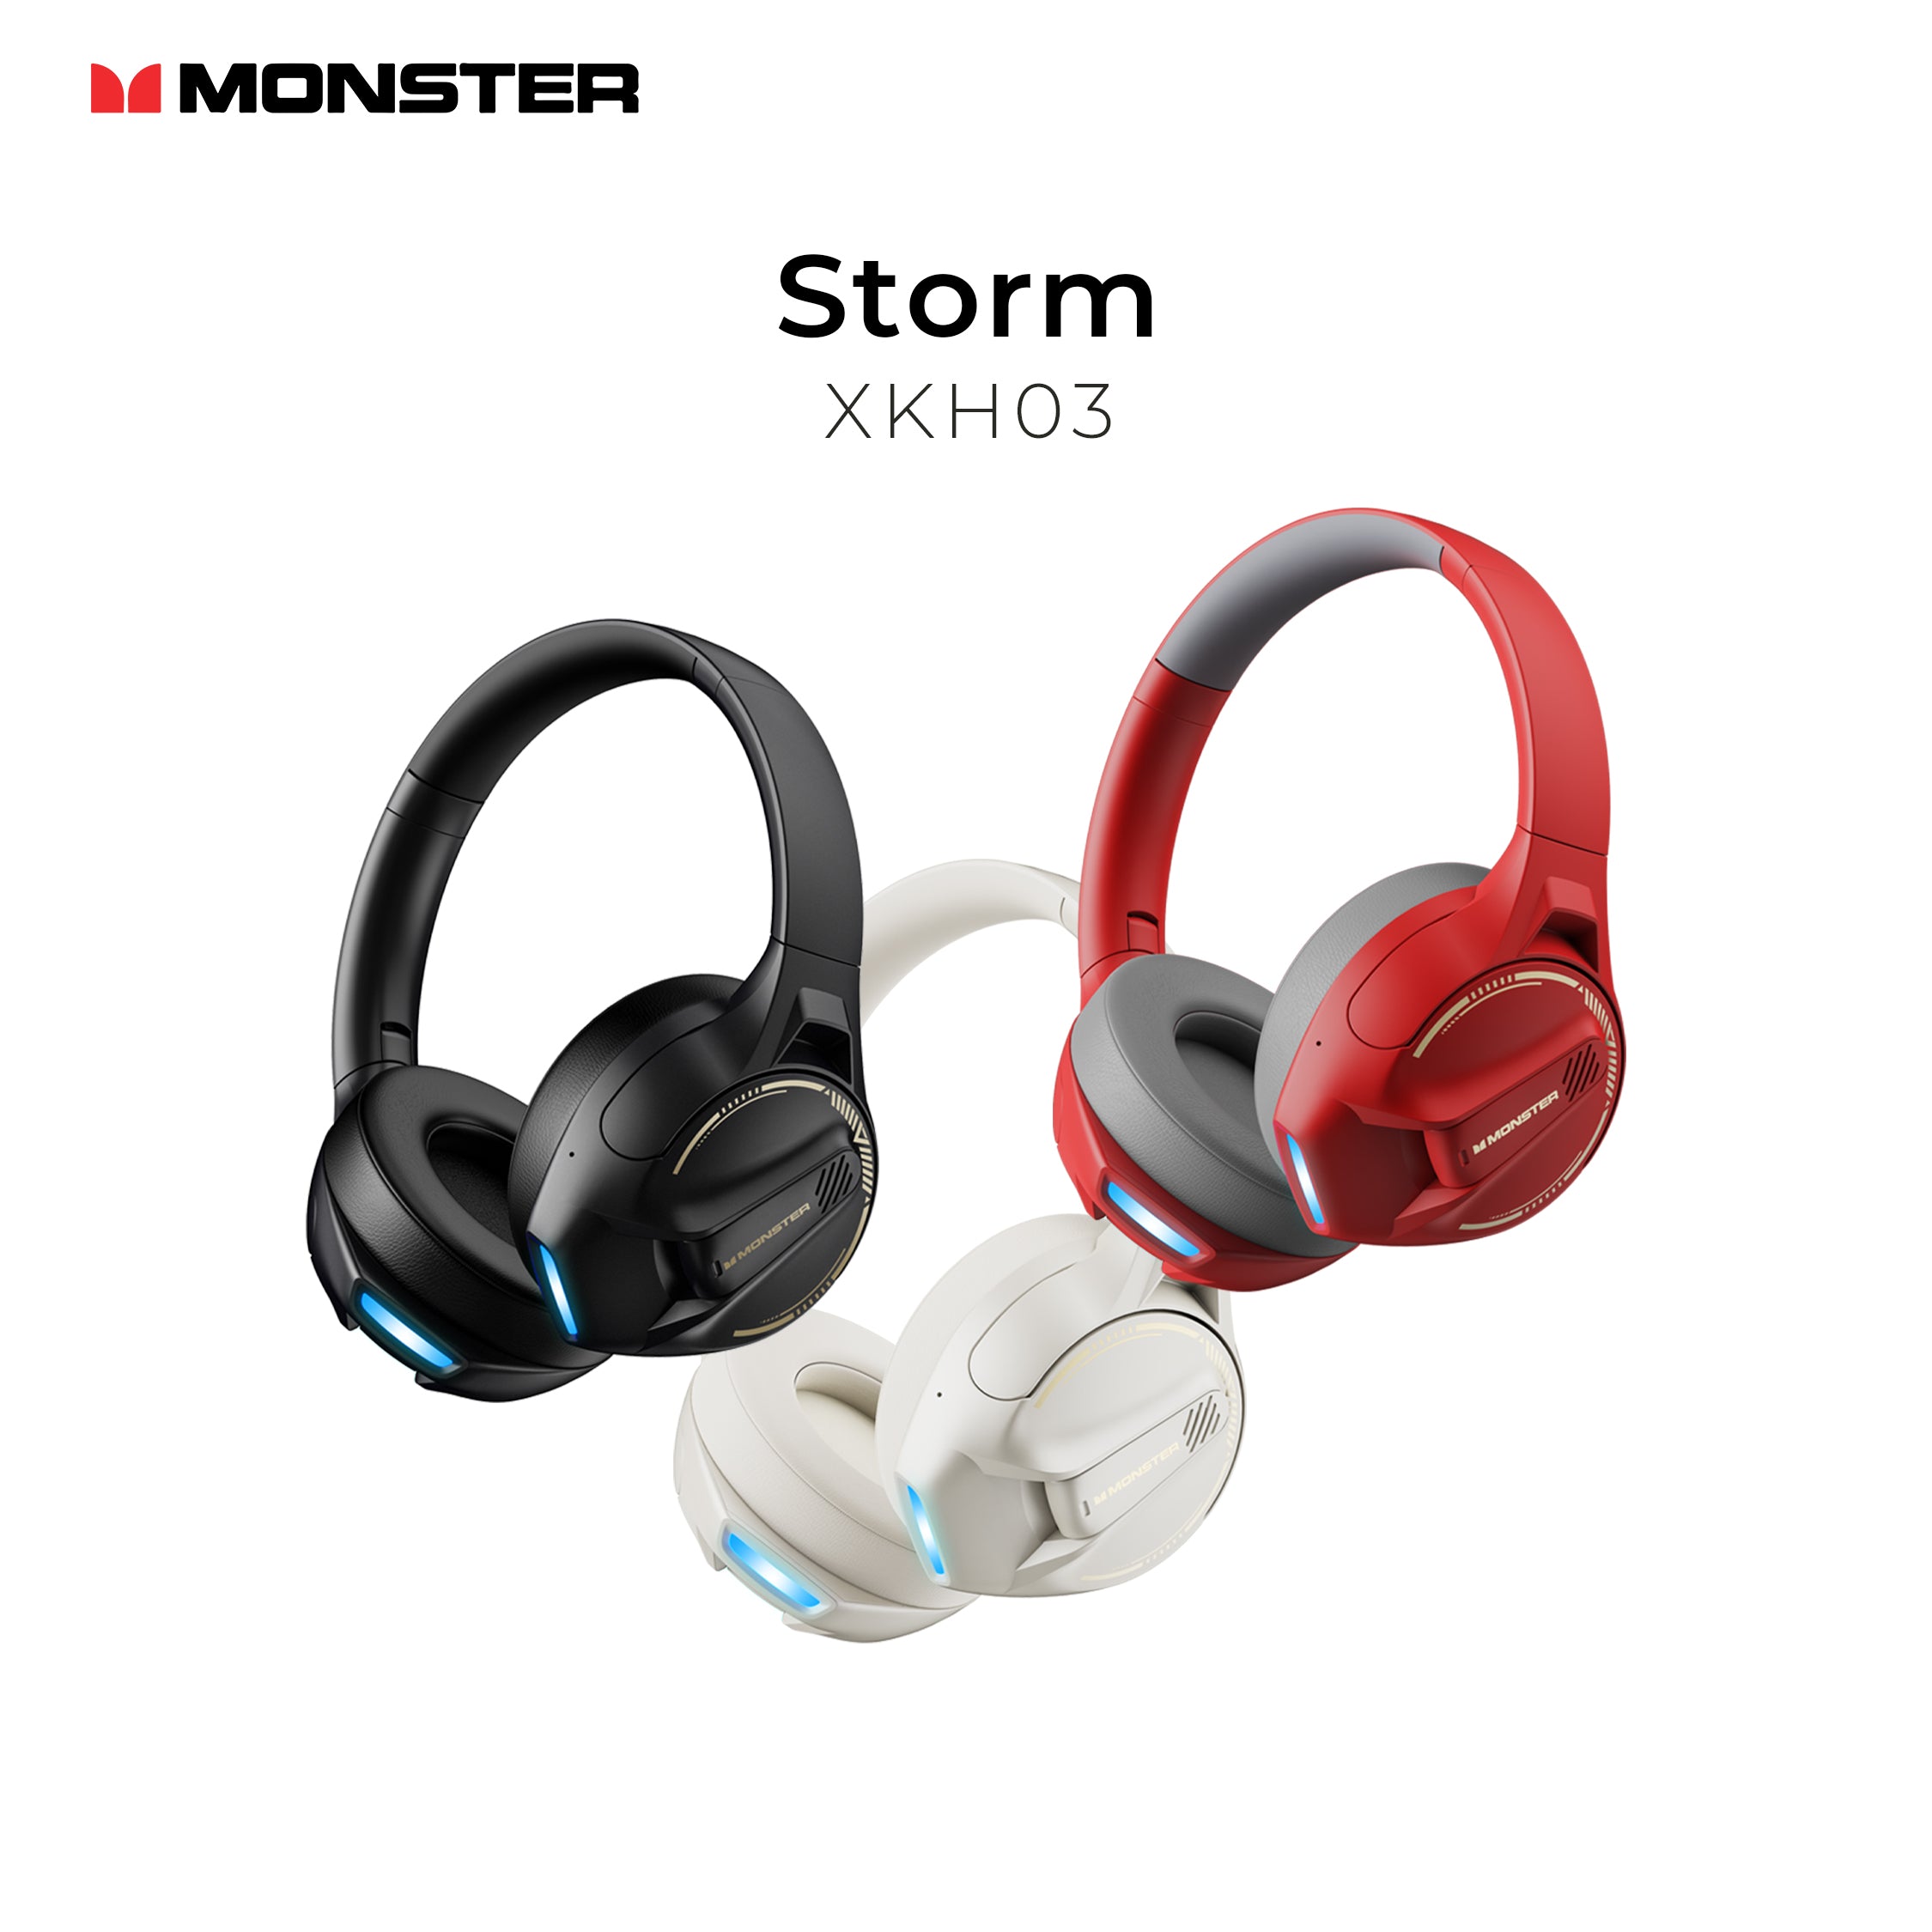 Monster Storm Headset XKH03